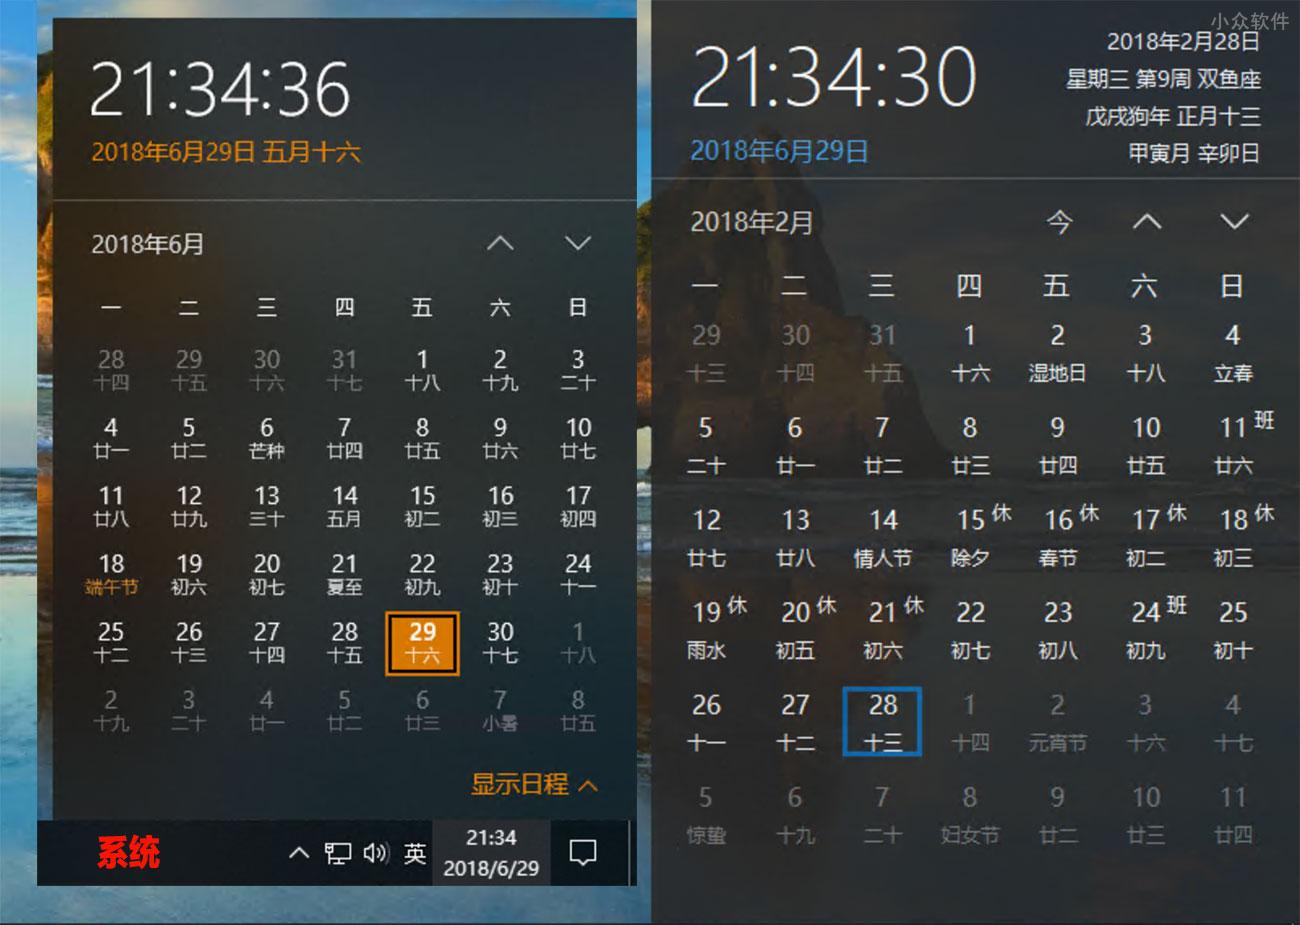 优效日历 - 替换 Windows 10 原生日历，提供年视图、节假日等信息 2